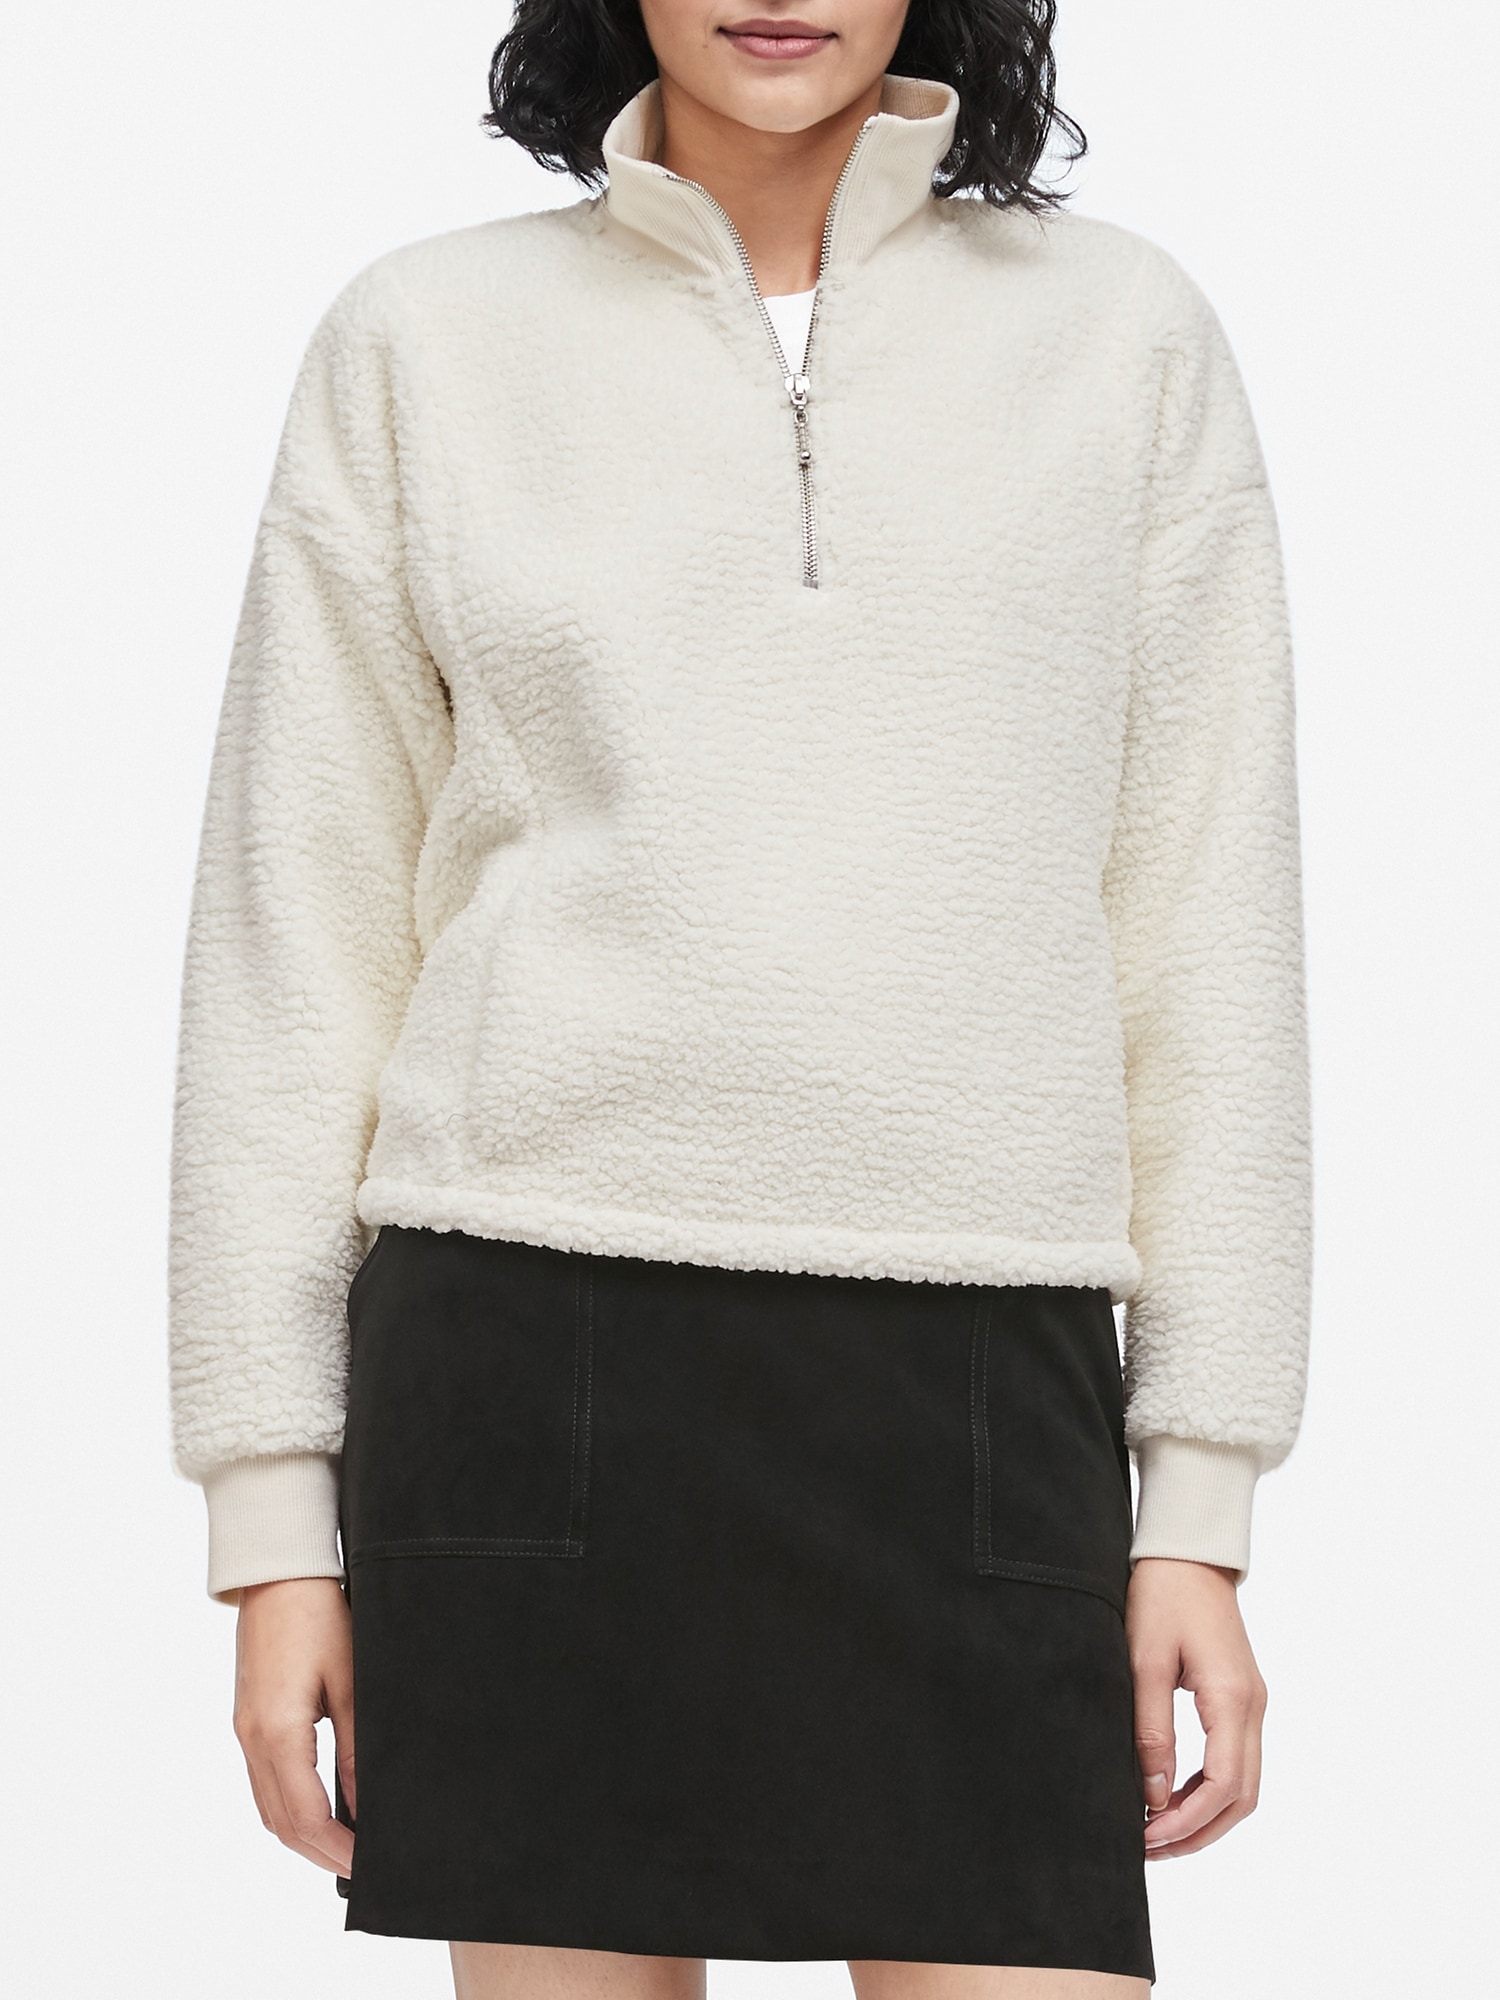 Sherpa Fleece Half-Zip Sweatshirt